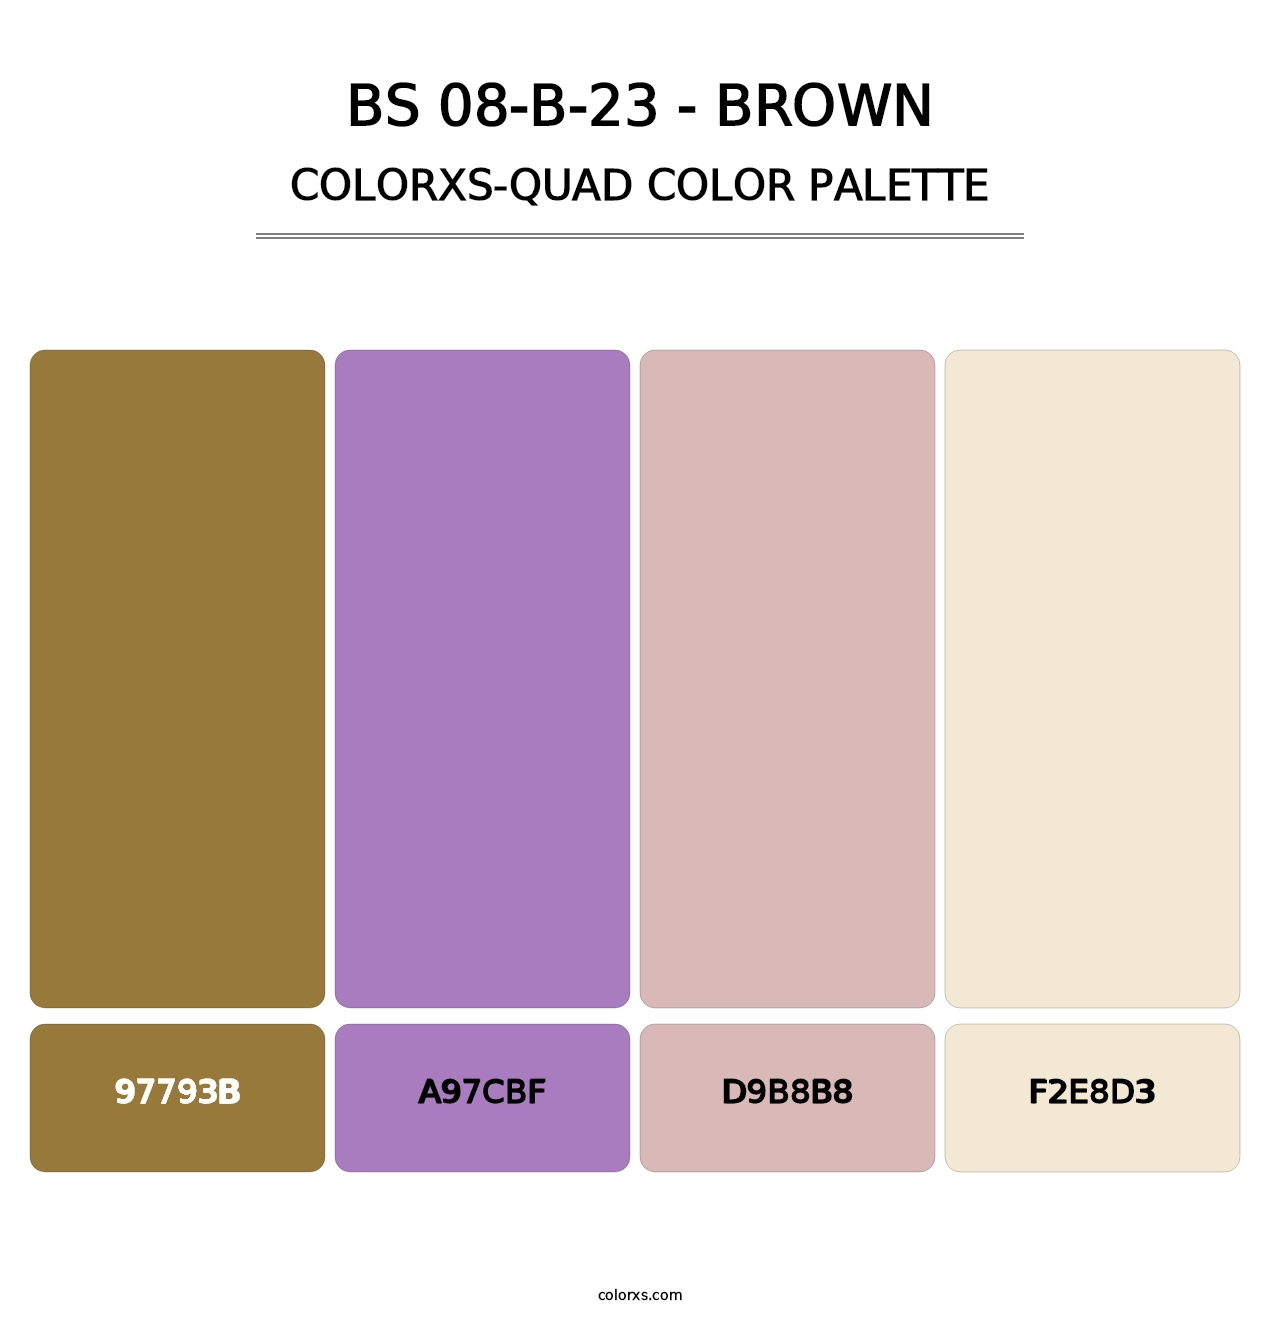 BS 08-B-23 - Brown - Colorxs Quad Palette